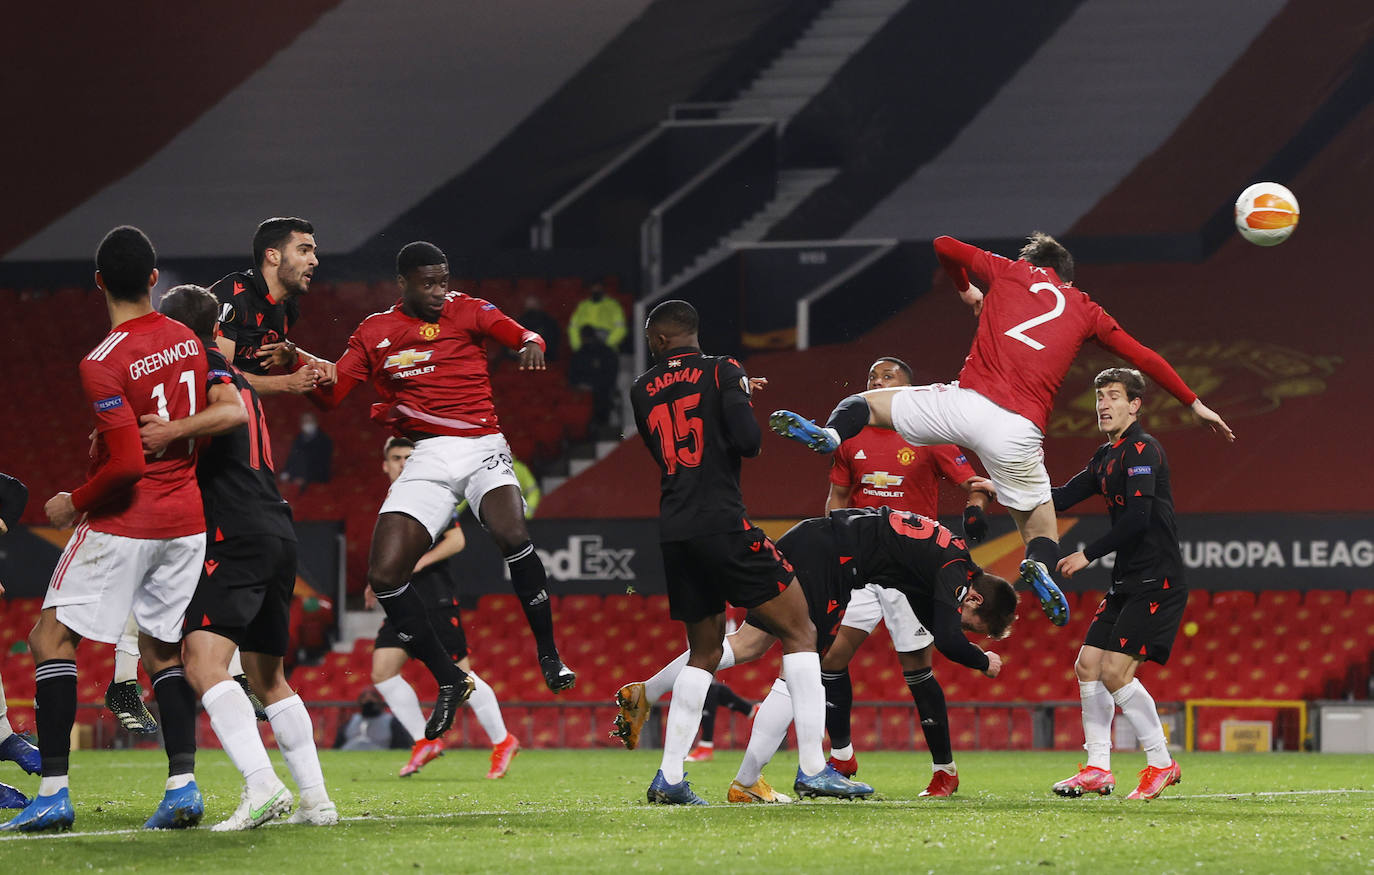 Fotos: Las imágenes del Manchester United - Real Sociedad